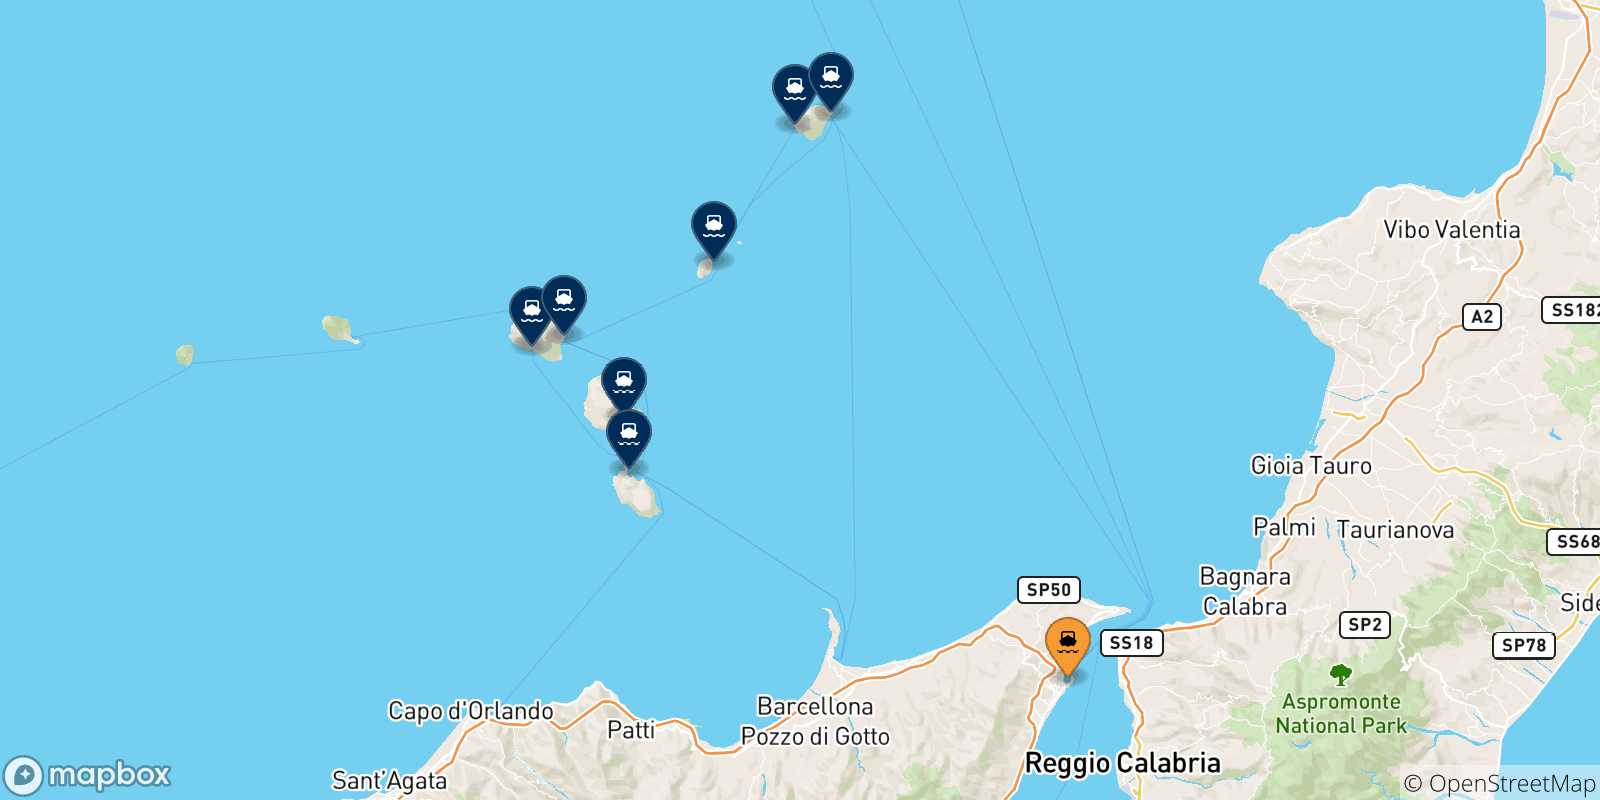 Mappa delle possibili rotte tra Messina e le Isole Eolie